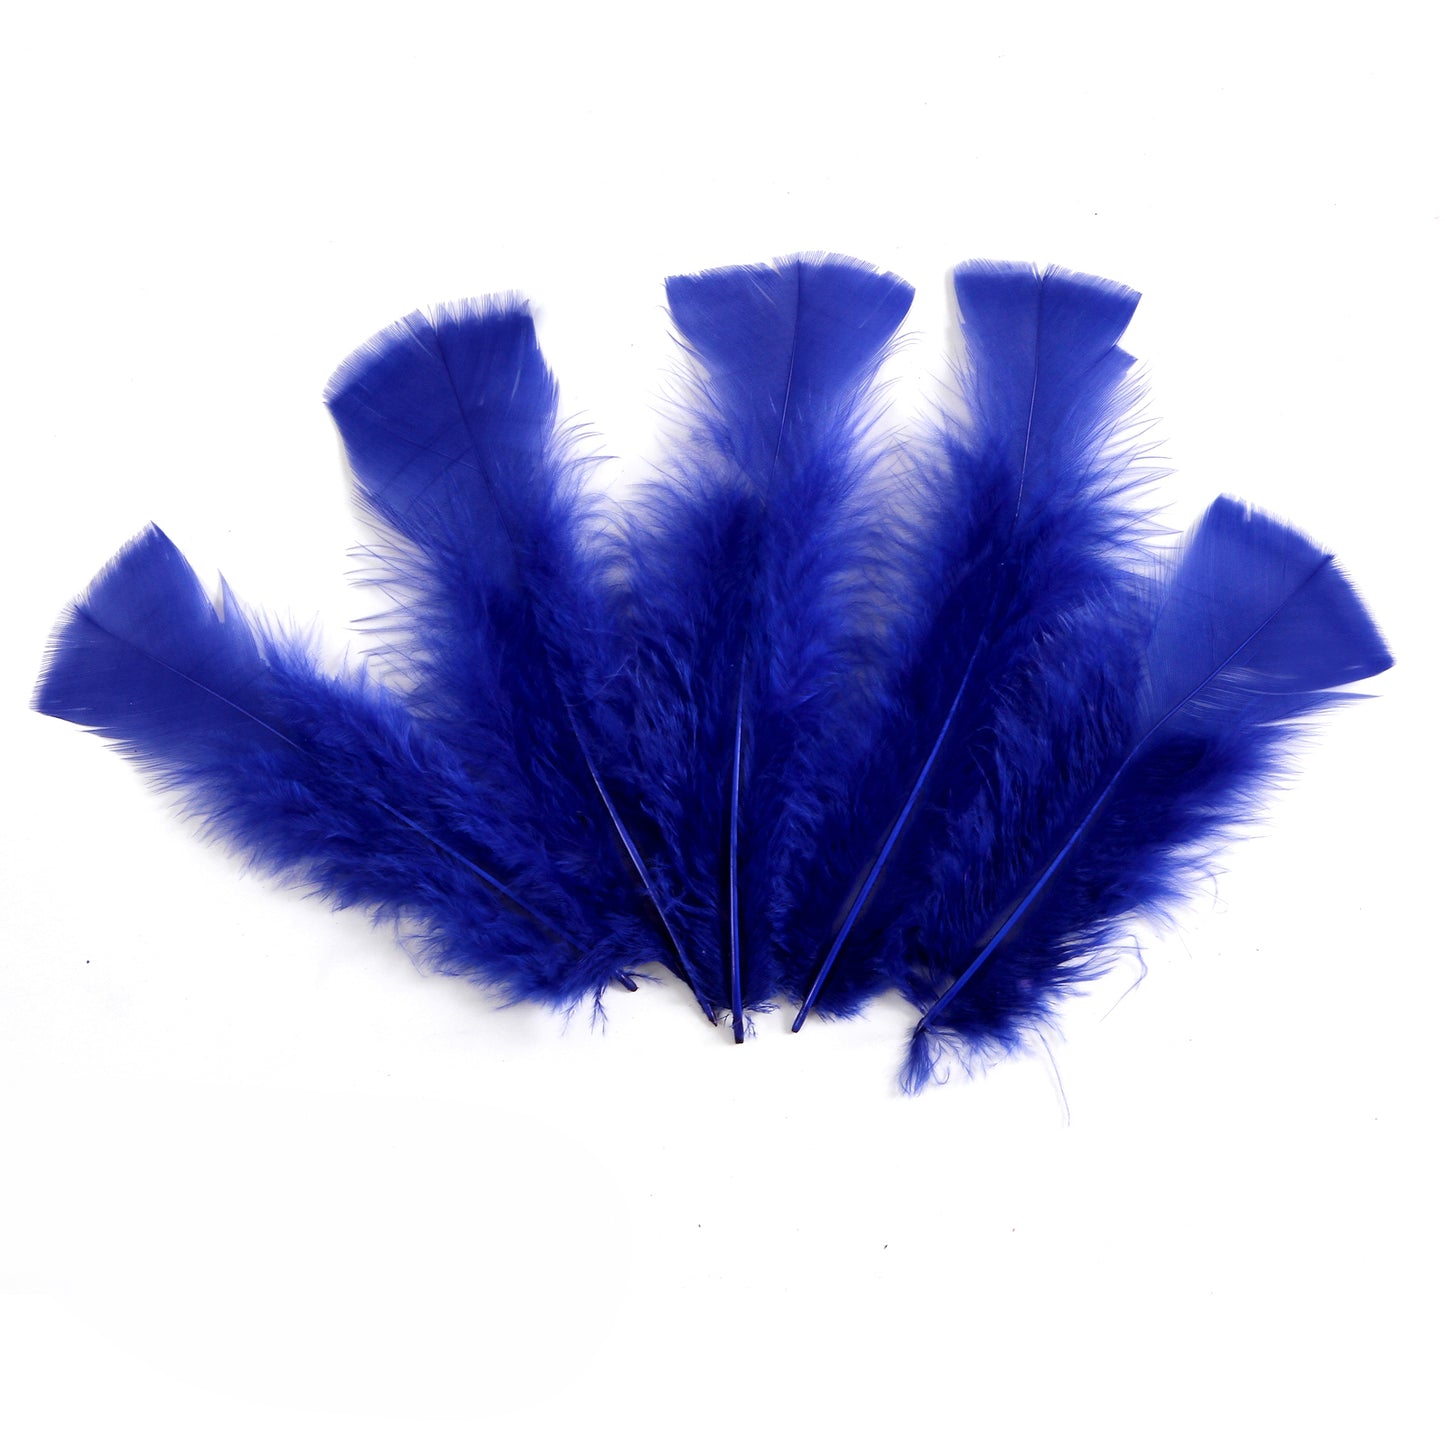 Turkey Flats Feathers, Hobby Lobby, 1086479